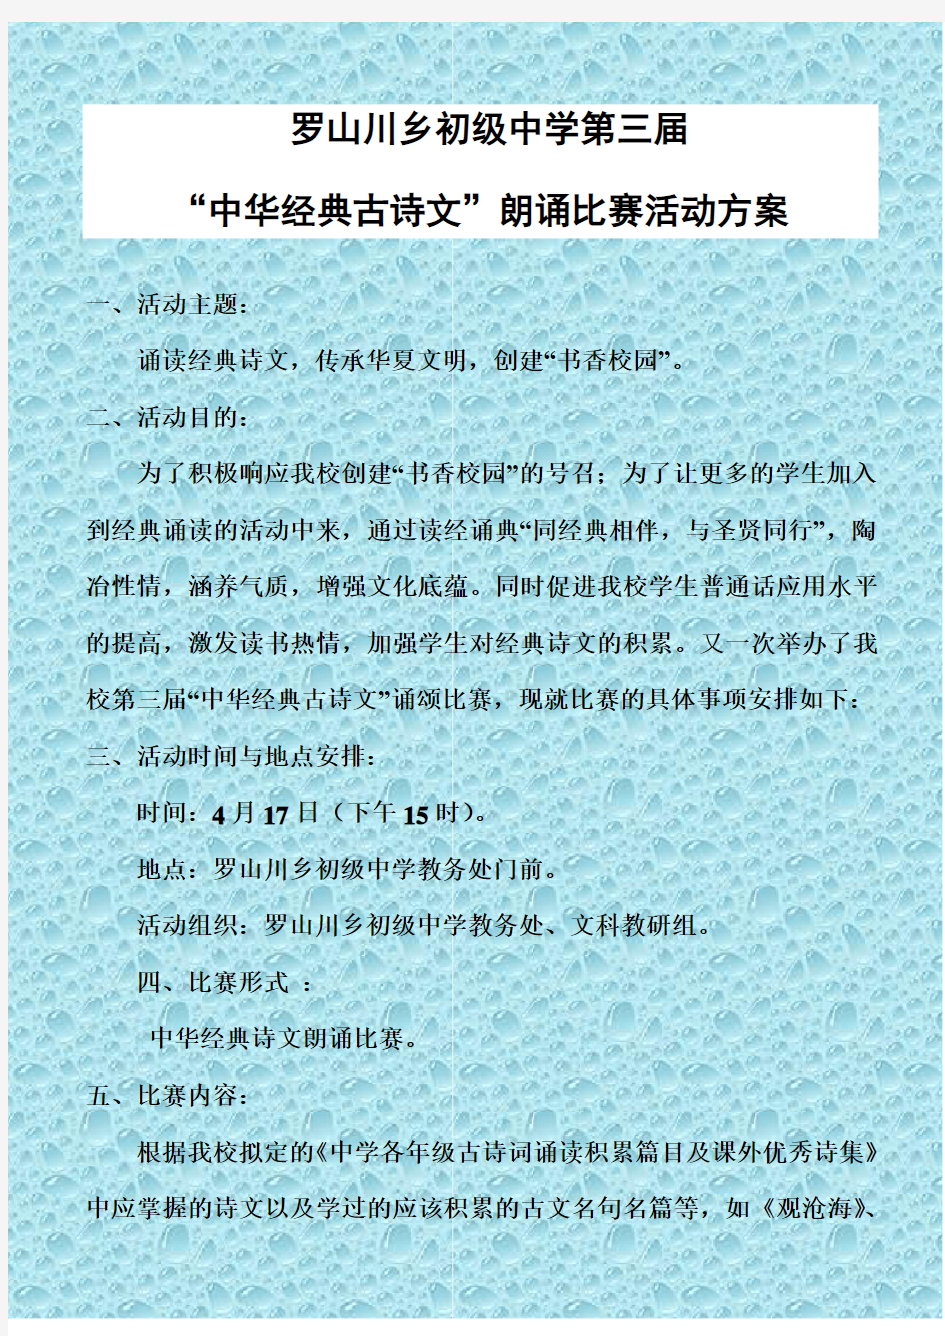 初级中学中华经典诗文诵读比赛活动方案